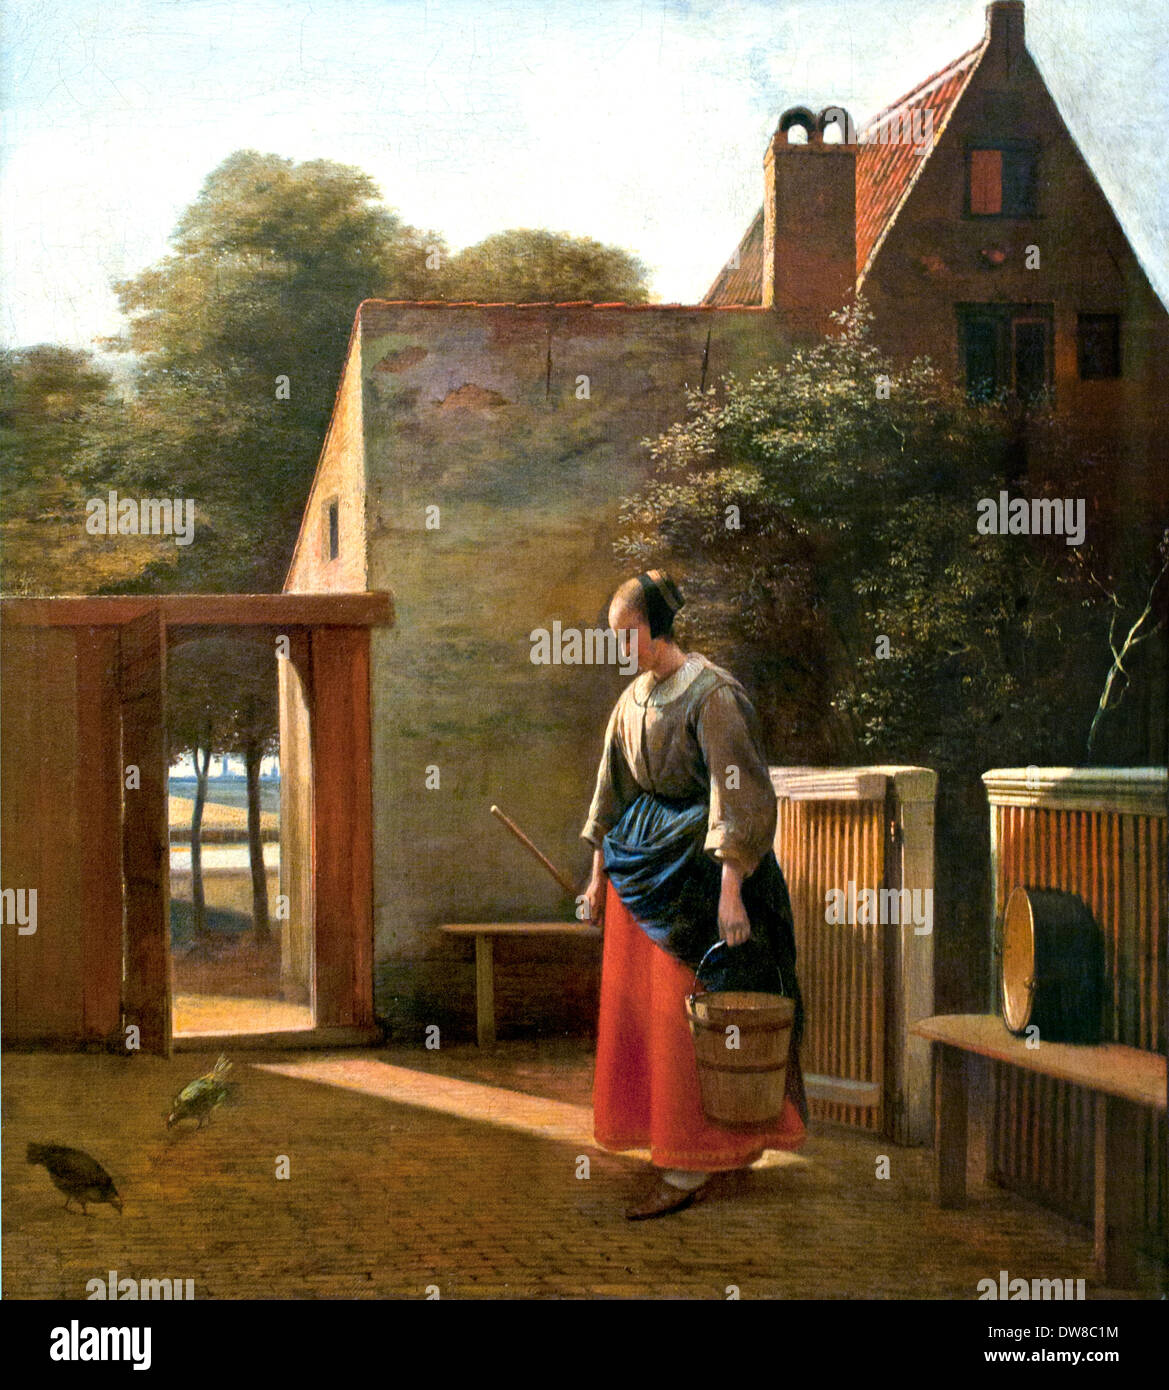 Ein Mädchen mit Eimer in einem Hinterhof 1660 Pieter de Hooch 1629-1684 Niederlande Niederlande Stockfoto